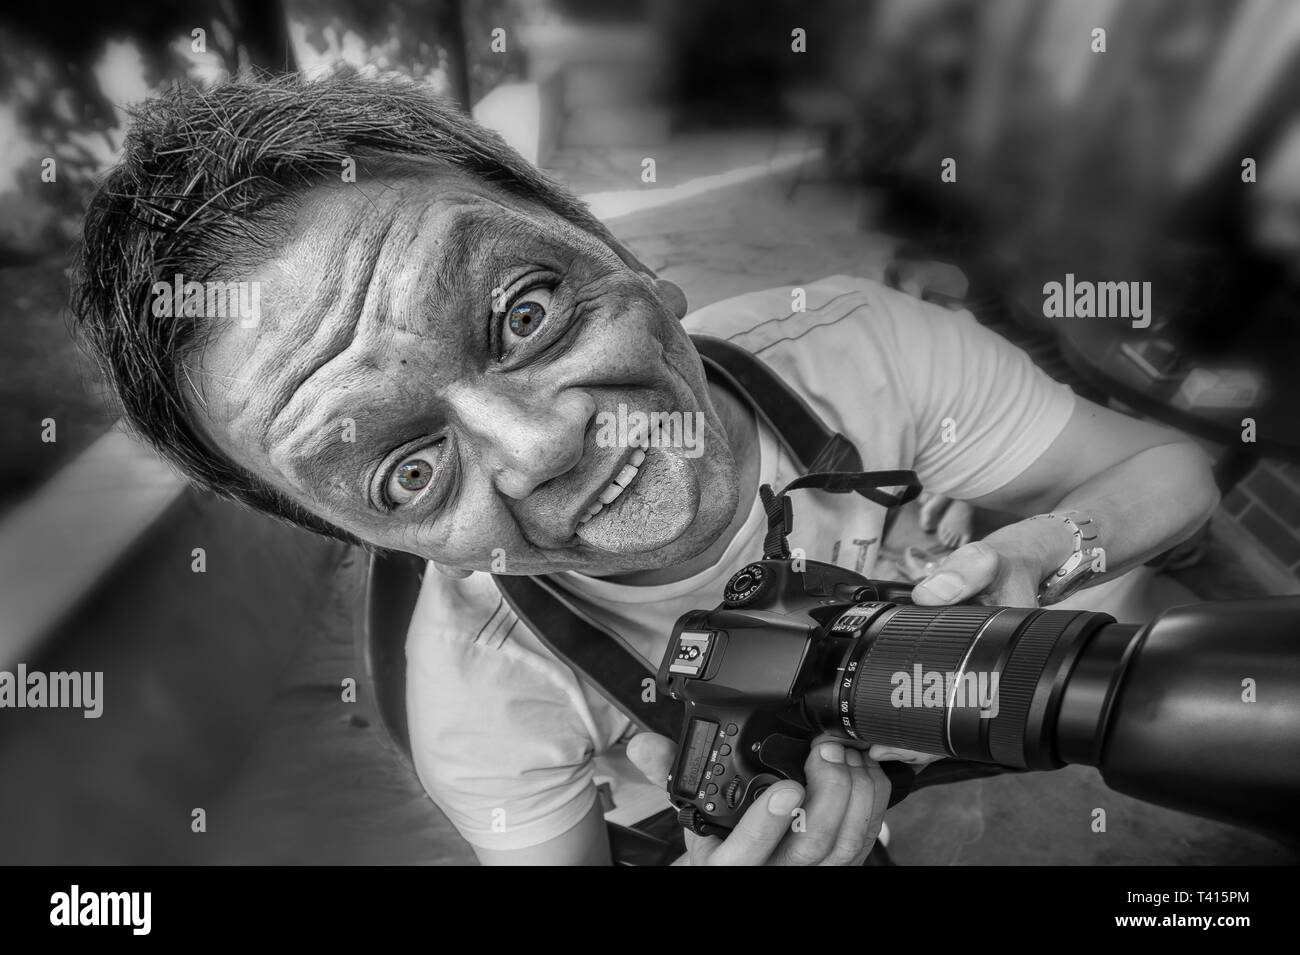 Close-up d'un journaliste / photographe avec appareil photo et le crazy face comique Banque D'Images